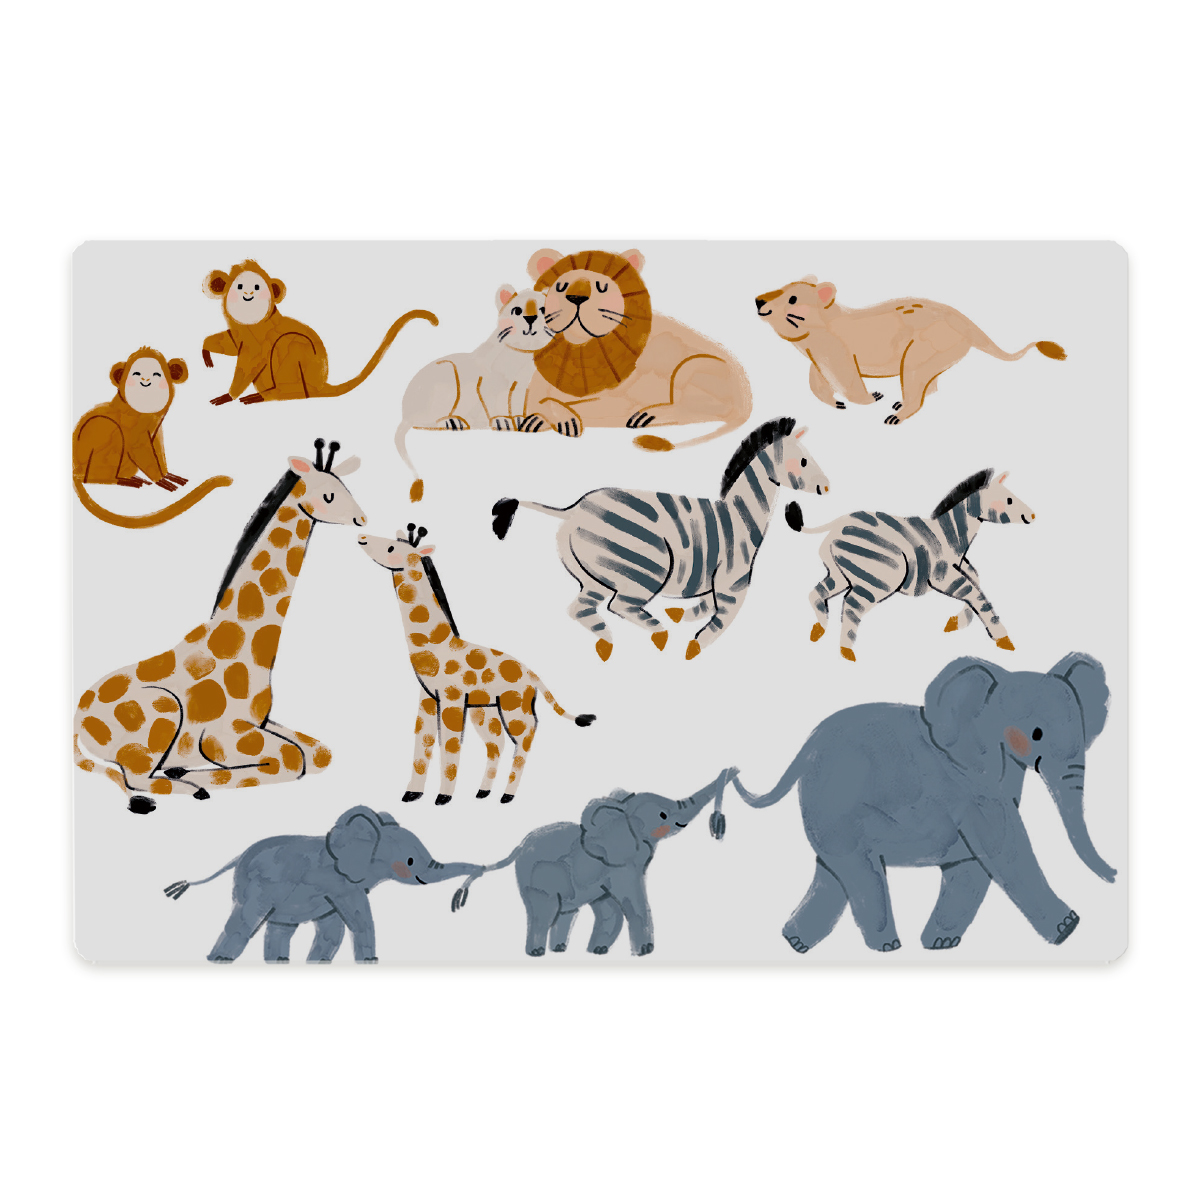 nuukk, Frühstücksbrettchen für Kinder, Schneidebrett, spülmaschinenfest, Motive: Elefant, Zebra, Giraffe, Affe, Löwe, Safari, Zootiere